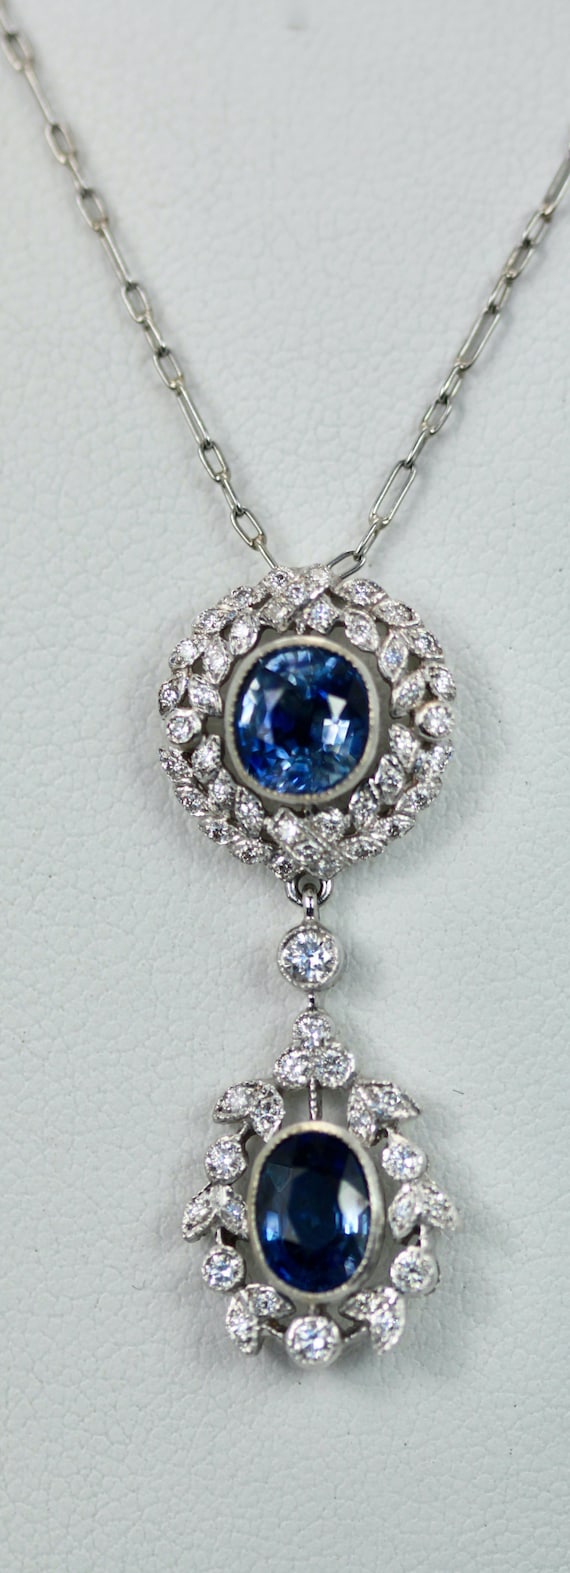 1980s Vintage Faux Sapphire Necklace Pendant